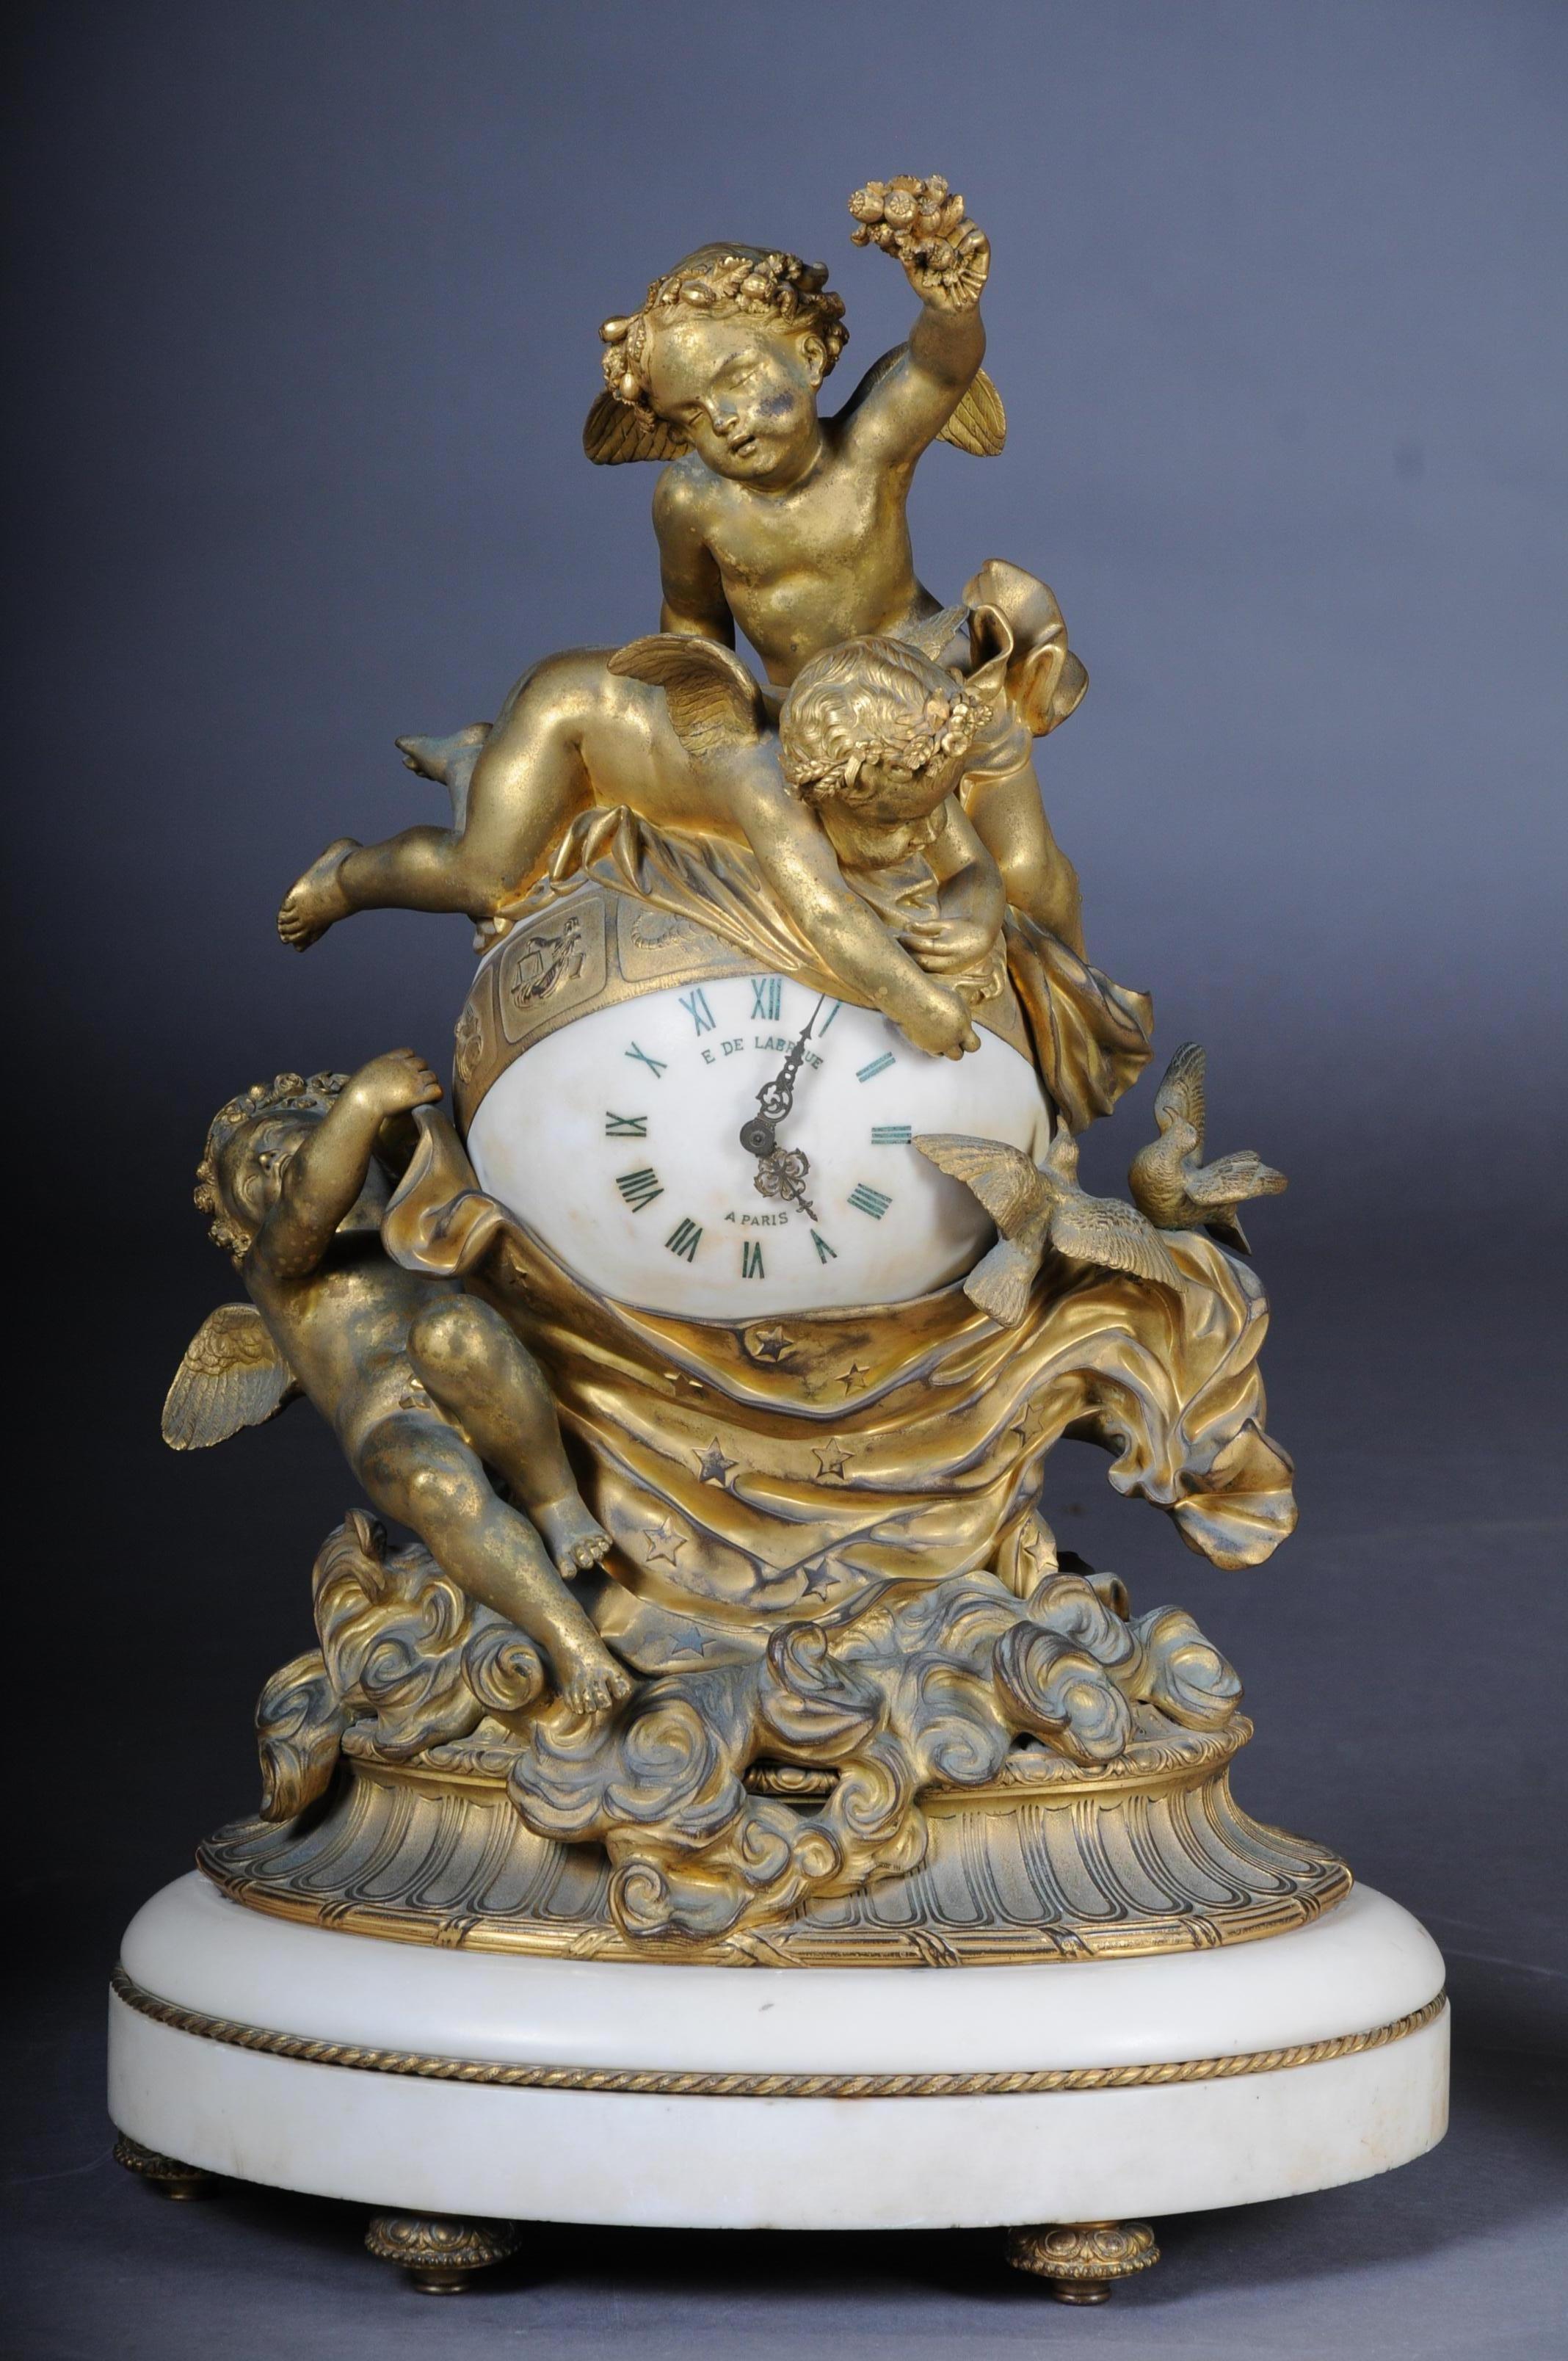 Französische Uhrengarnitur aus Goldbronze und Carrara-Marmor von E.De. Labroue, Paris, um 1890.

symbolisch wird das Tuch der Abenddämmerung über die Erde gezogen, drei Putten und zwei Tauben erheben sich auf einer Wolkenbank, das kugelförmige